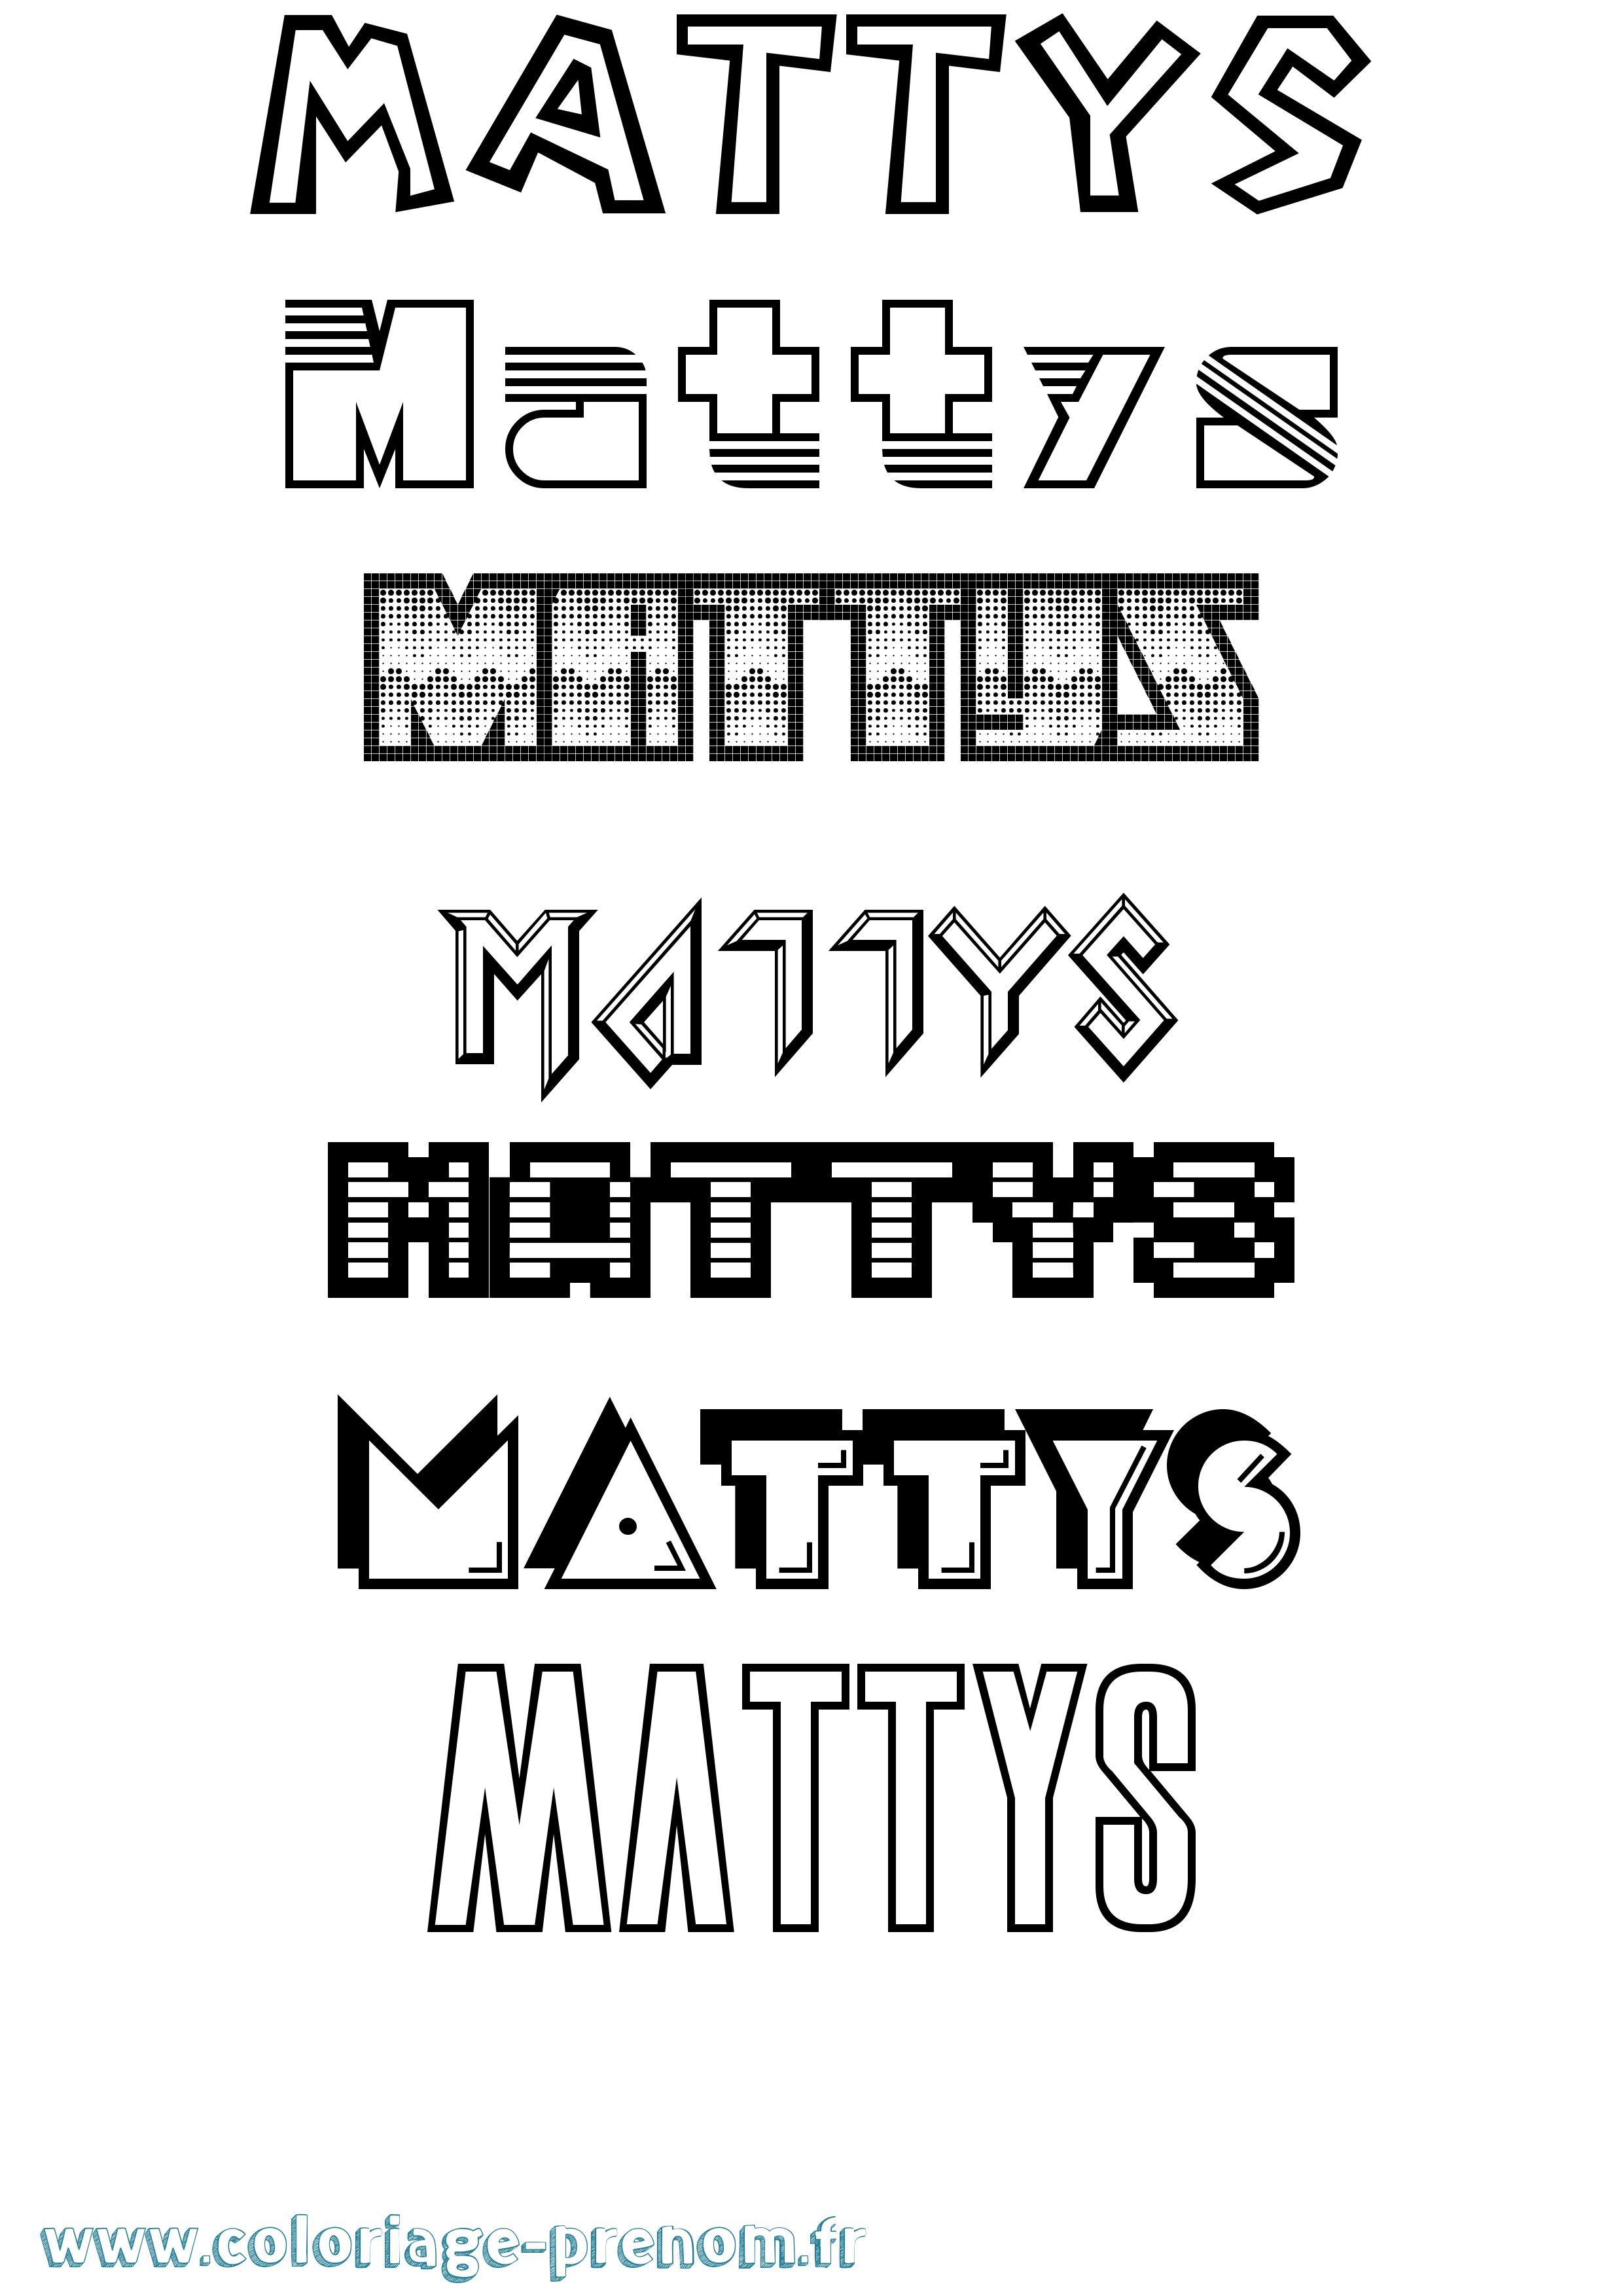 Coloriage prénom Mattys Jeux Vidéos